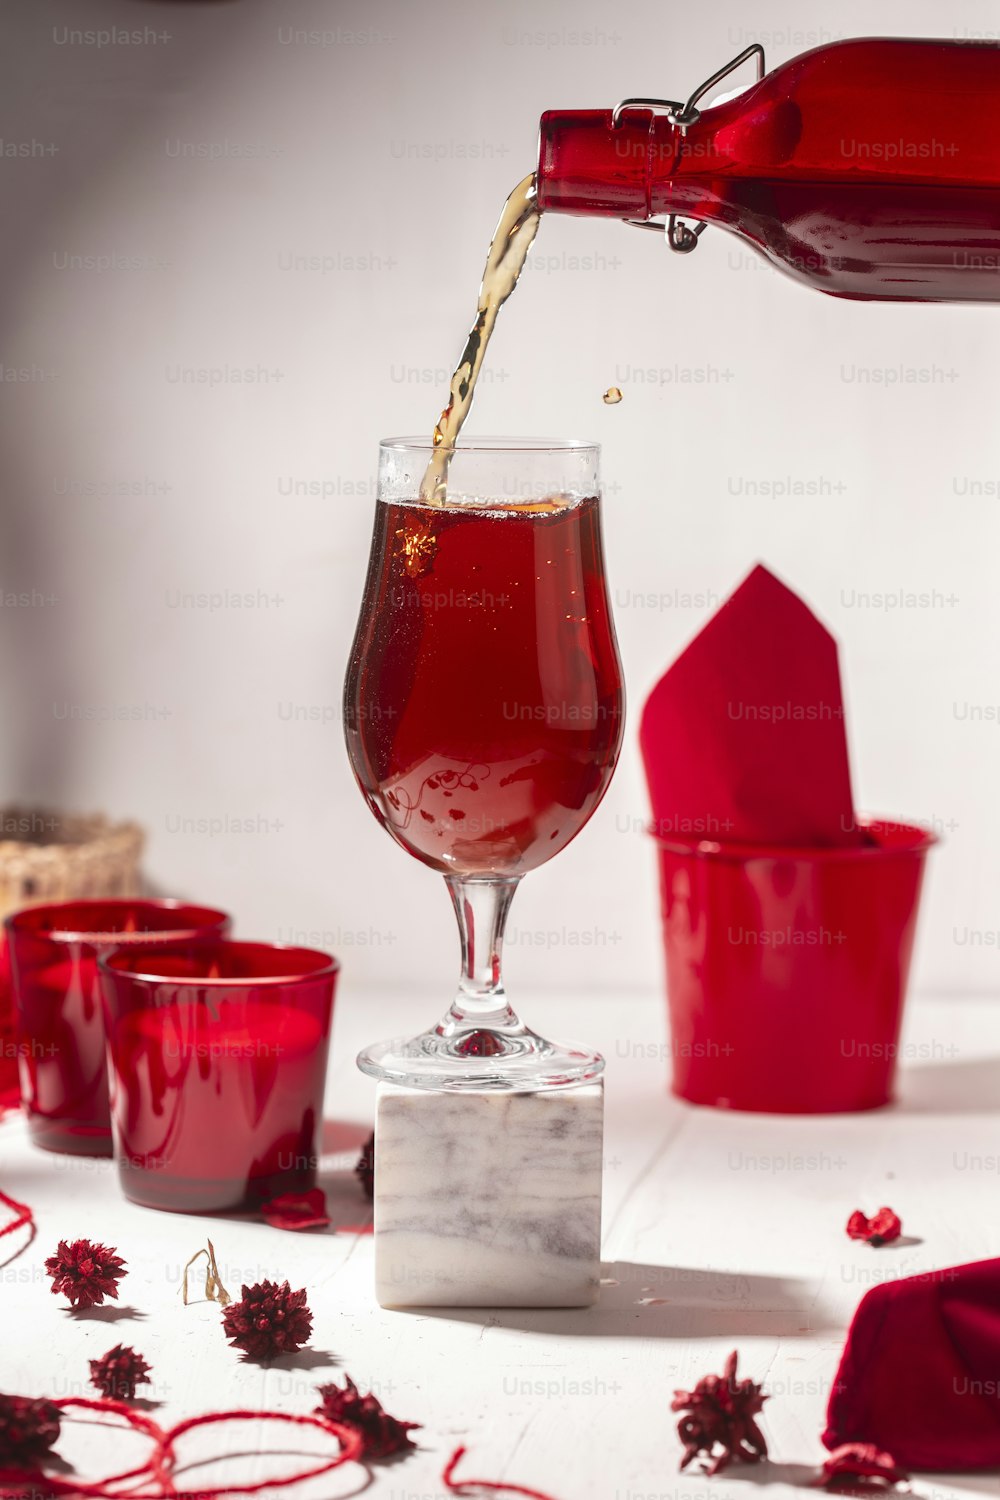 ein rotes Getränk, das in ein Weinglas gegossen wird